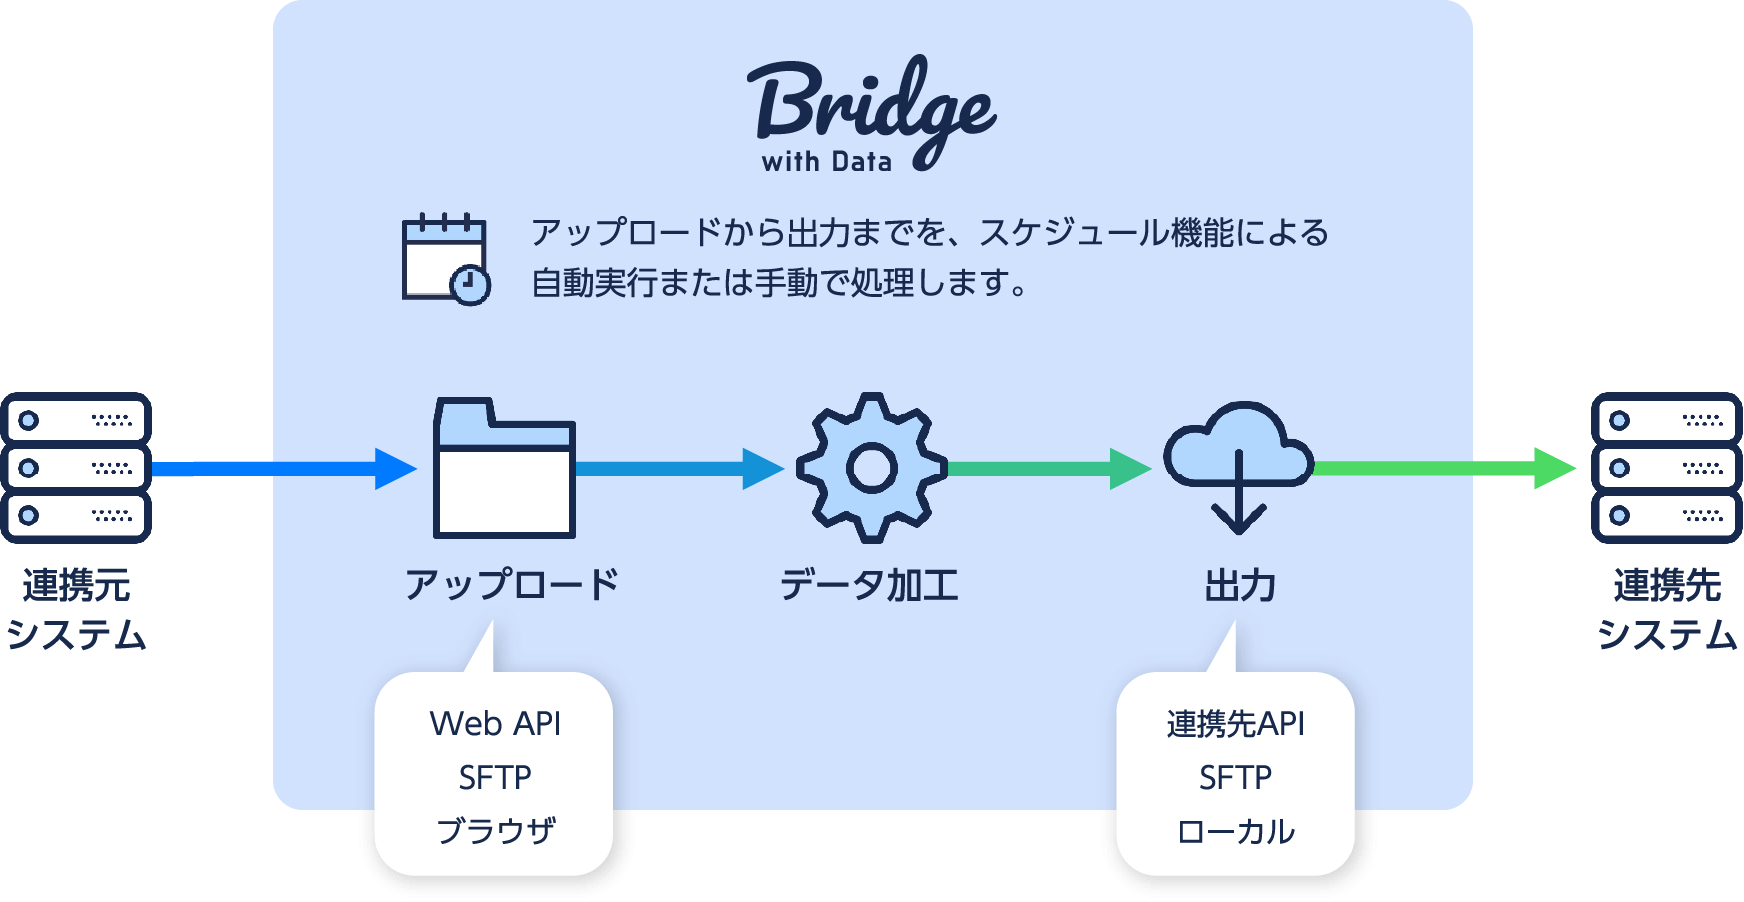 Bridge with Data アップロードから出力までを、スケジュール機能による自動実行または手動で処理します。